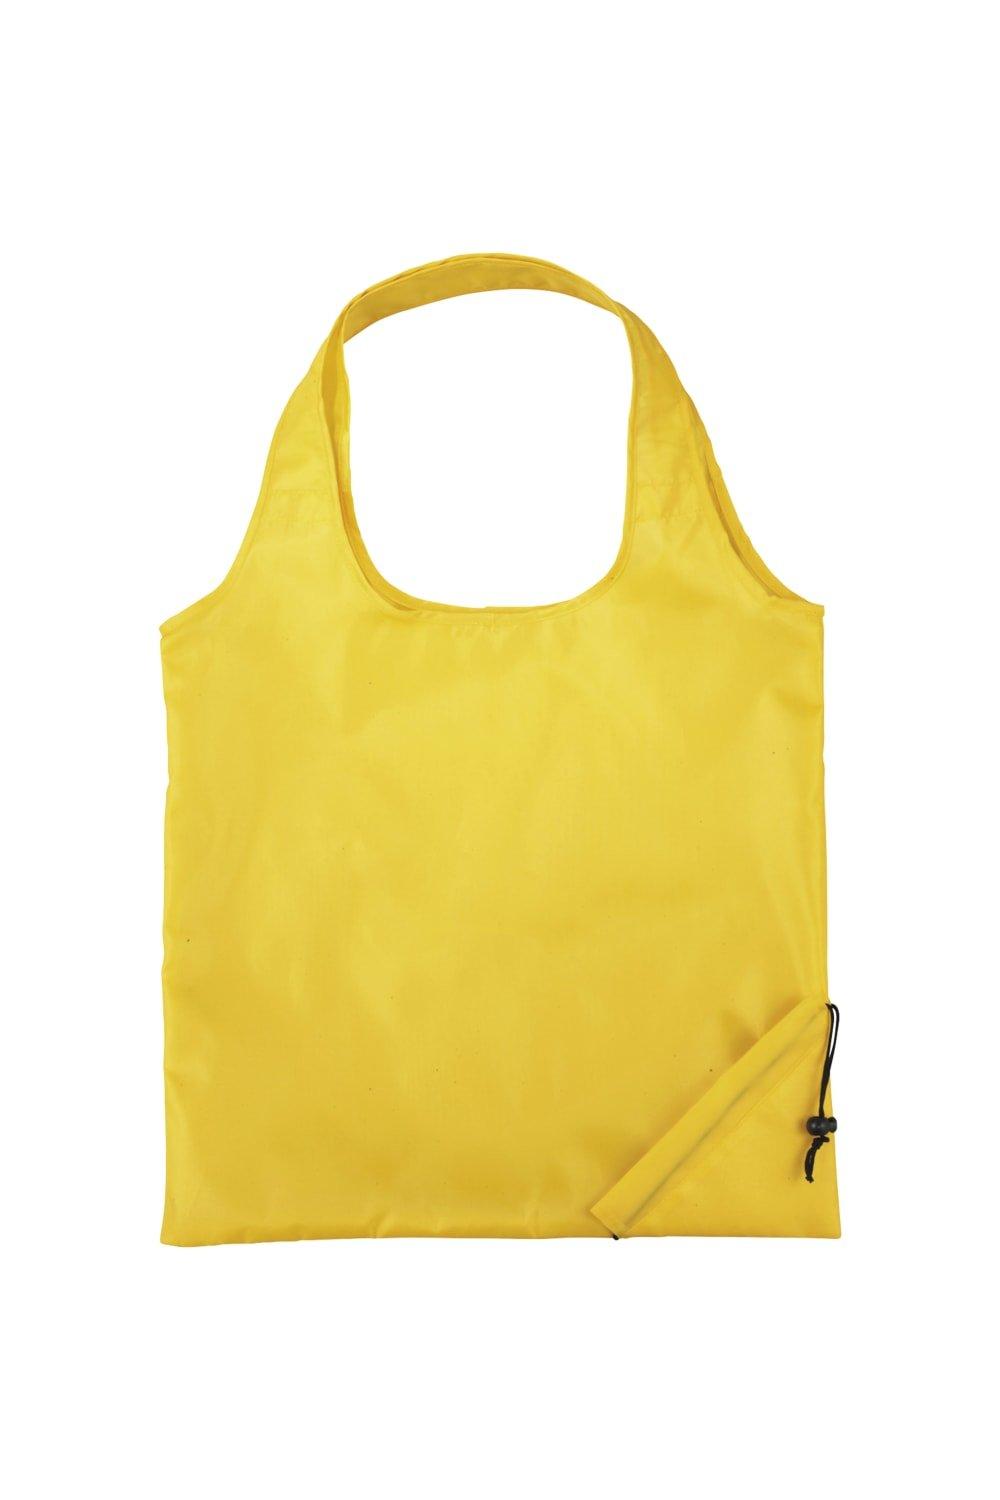 Складная сумка-тоут Bungalow из полиэстера (2 шт.) Bullet, желтый